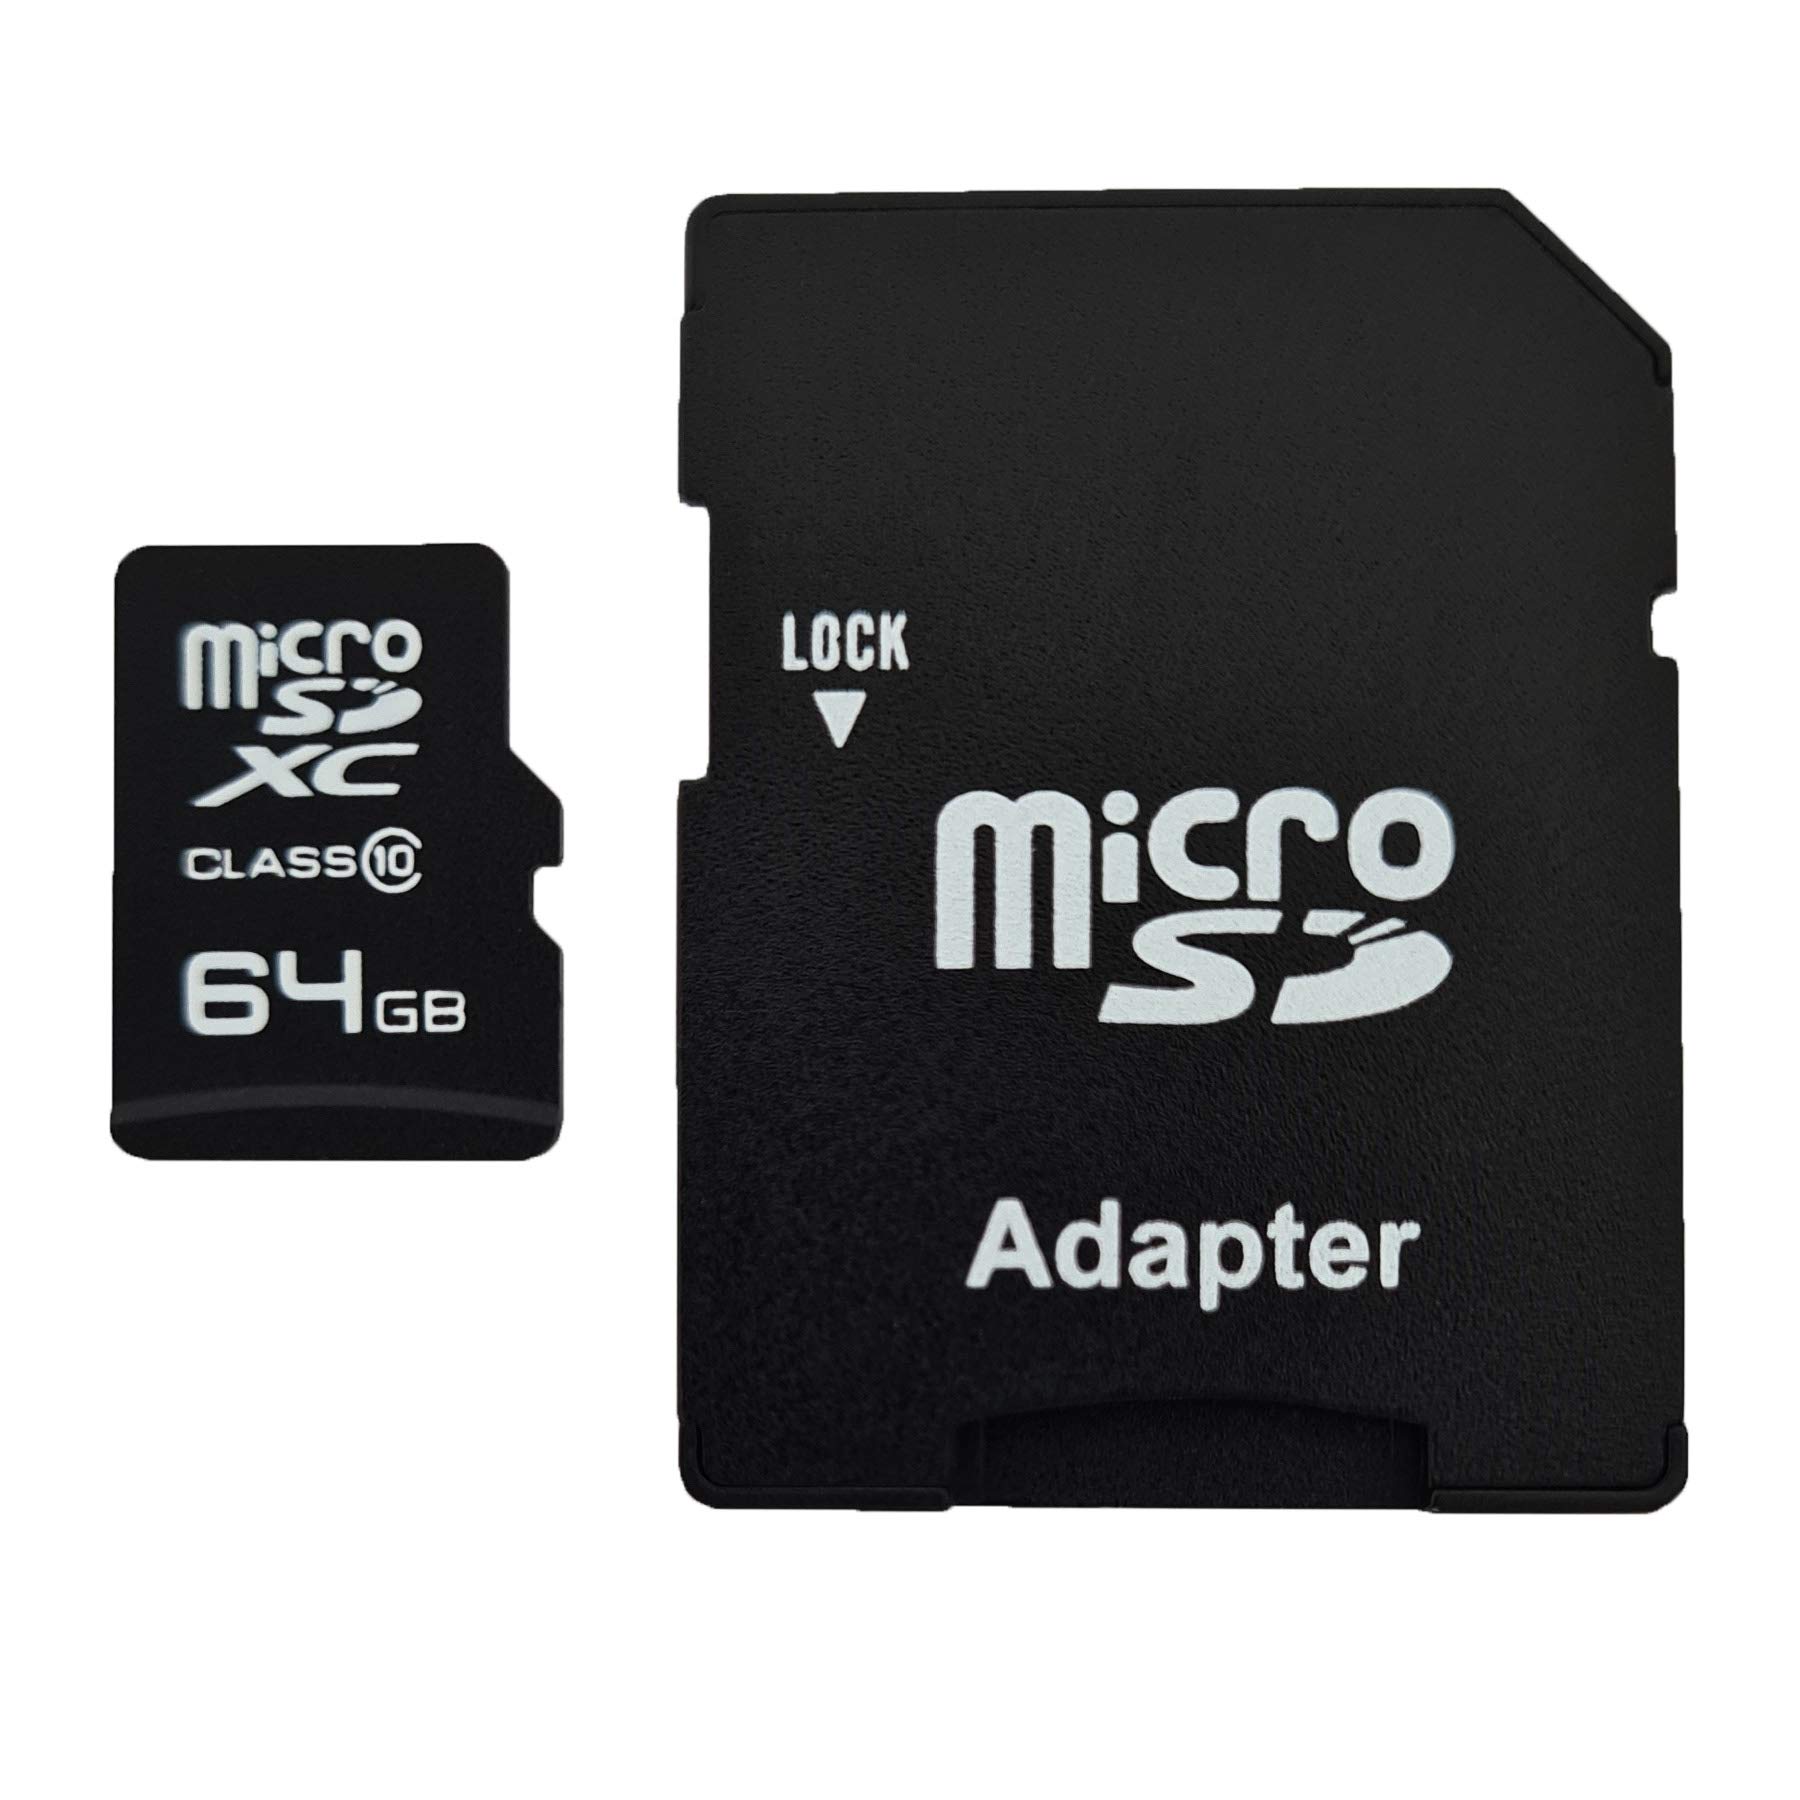 dekoelektropunktde 64GB MicroSDXC Speicherkarte mit Adapter Class 10 kompatibel für Sony Cyber-Shot DSC-H70 DSC-W610 DSC-TX5